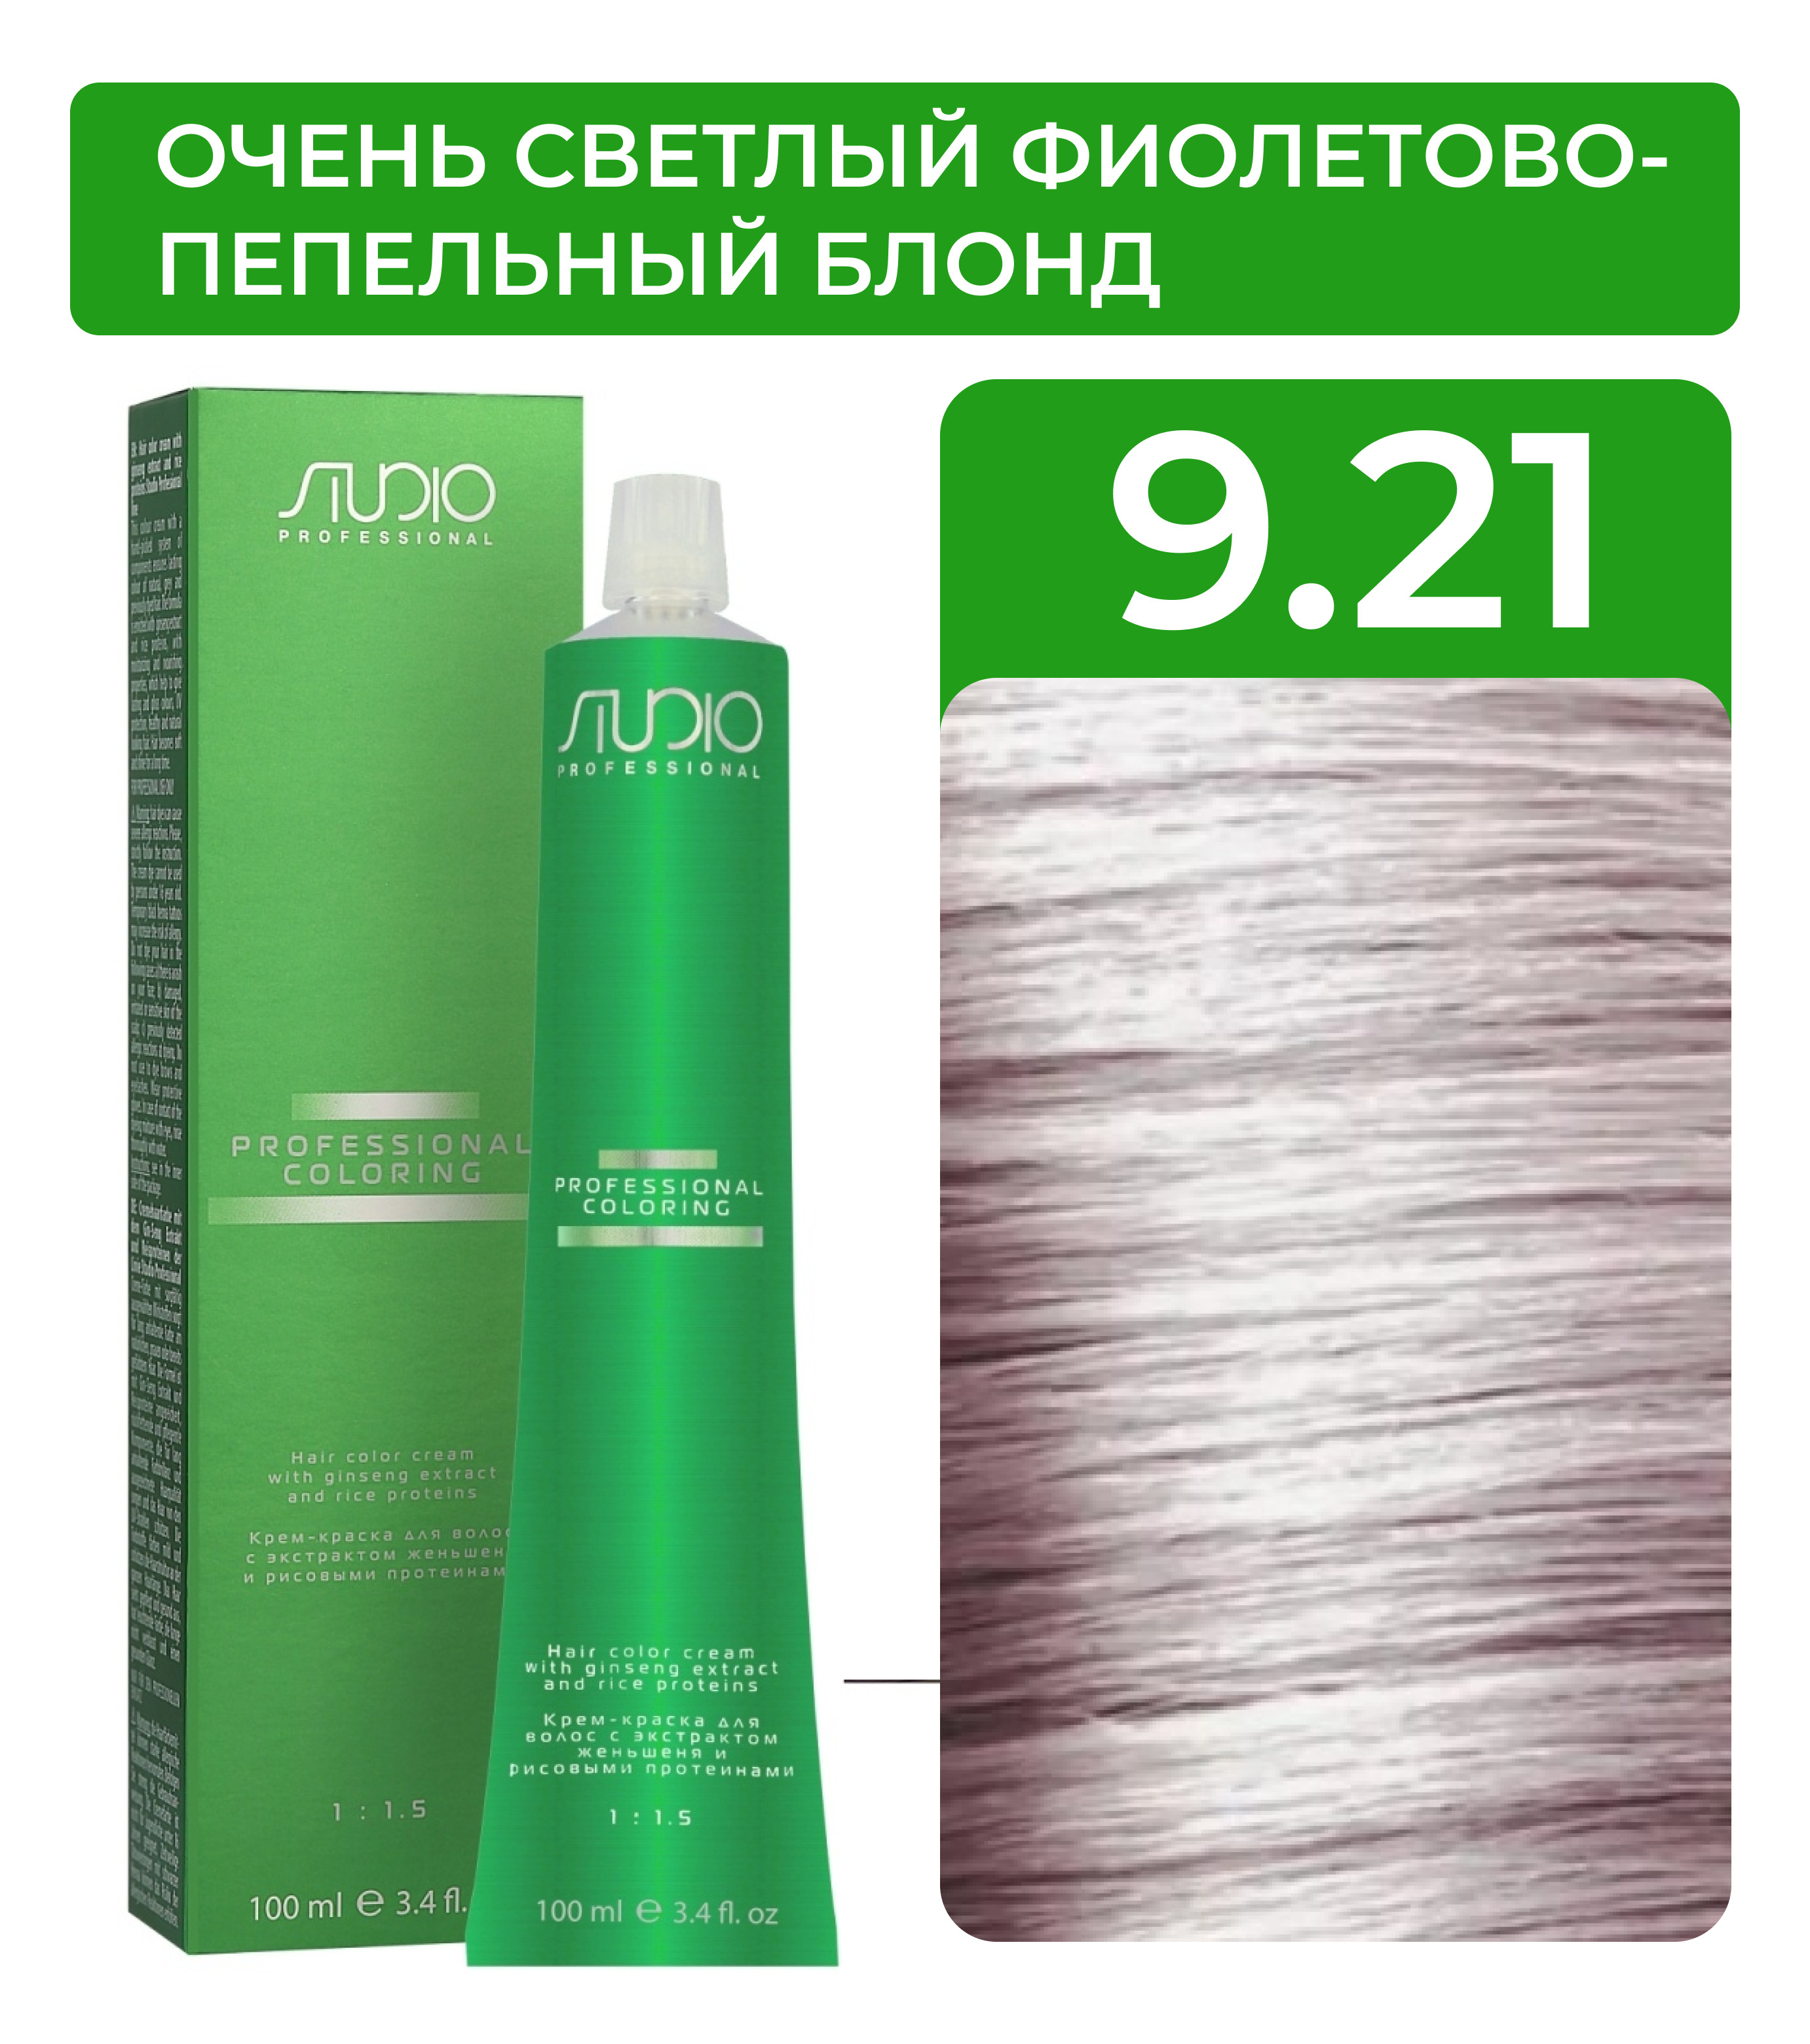 KAPOUS Крем-краска для волос STUDIO PROFESSIONAL с экстрактом женьшеня и рисовыми протеинами 9.21 очень светлый фиолетово-пепельный блонд, 100 мл - купить с доставкой по выгодным ценам в интернет-магазине OZON (501600342)